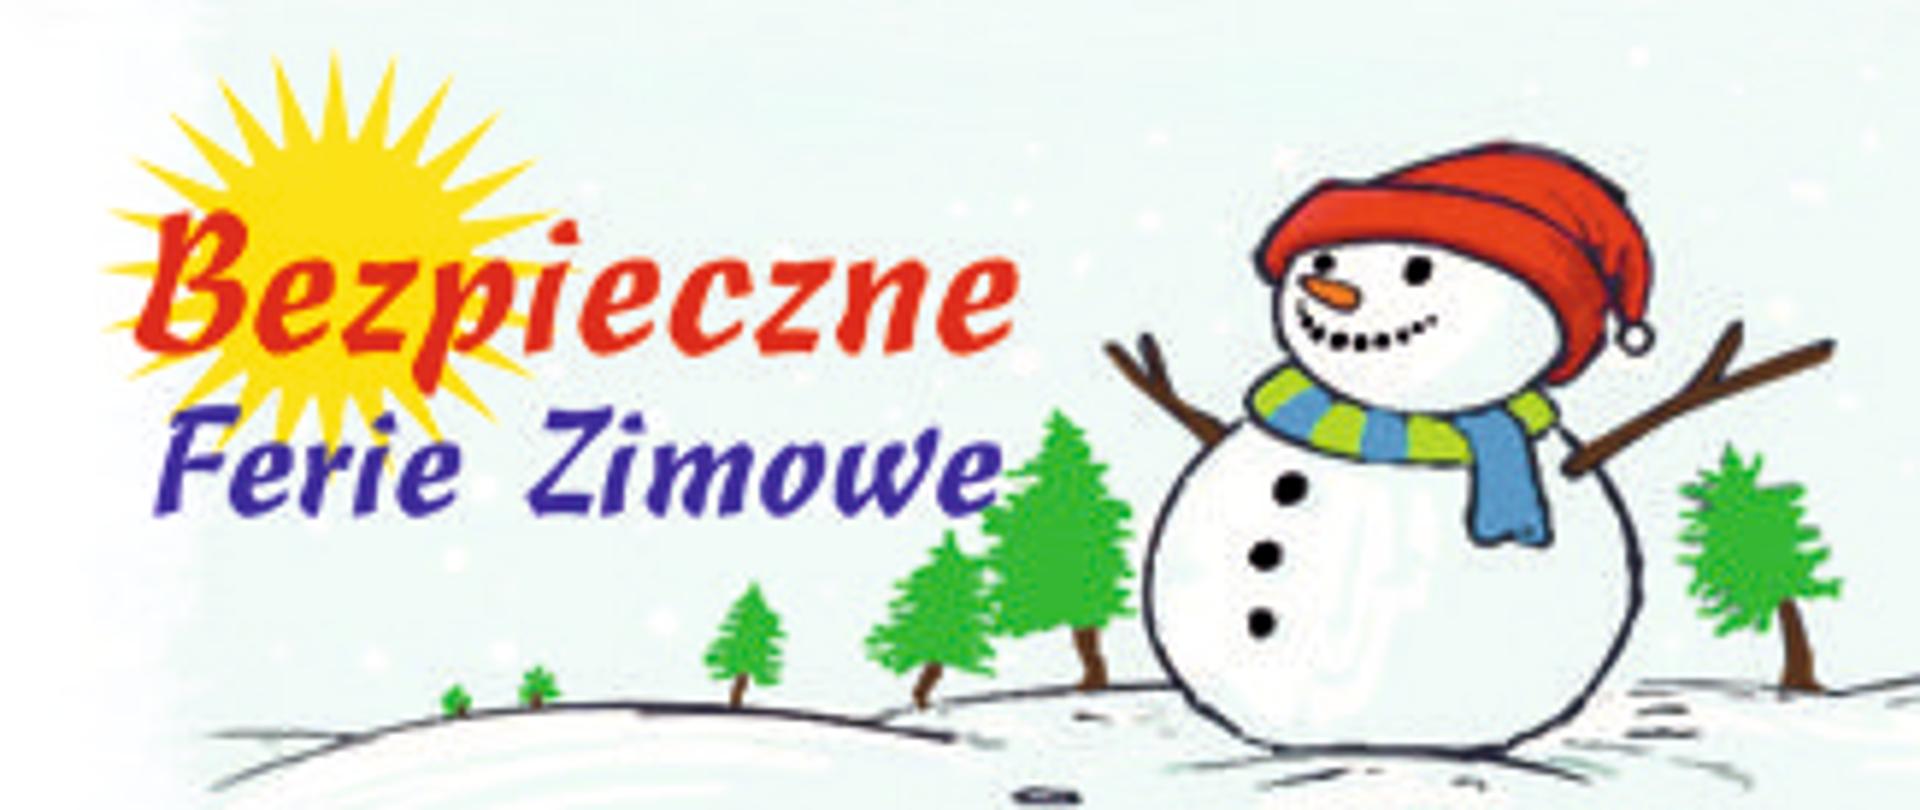 Ferie zimowe 2022 - Wojewódzka Stacja Sanitarno-Epidemiologiczna w Gorzowie  Wielkopolskim - Portal Gov.pl